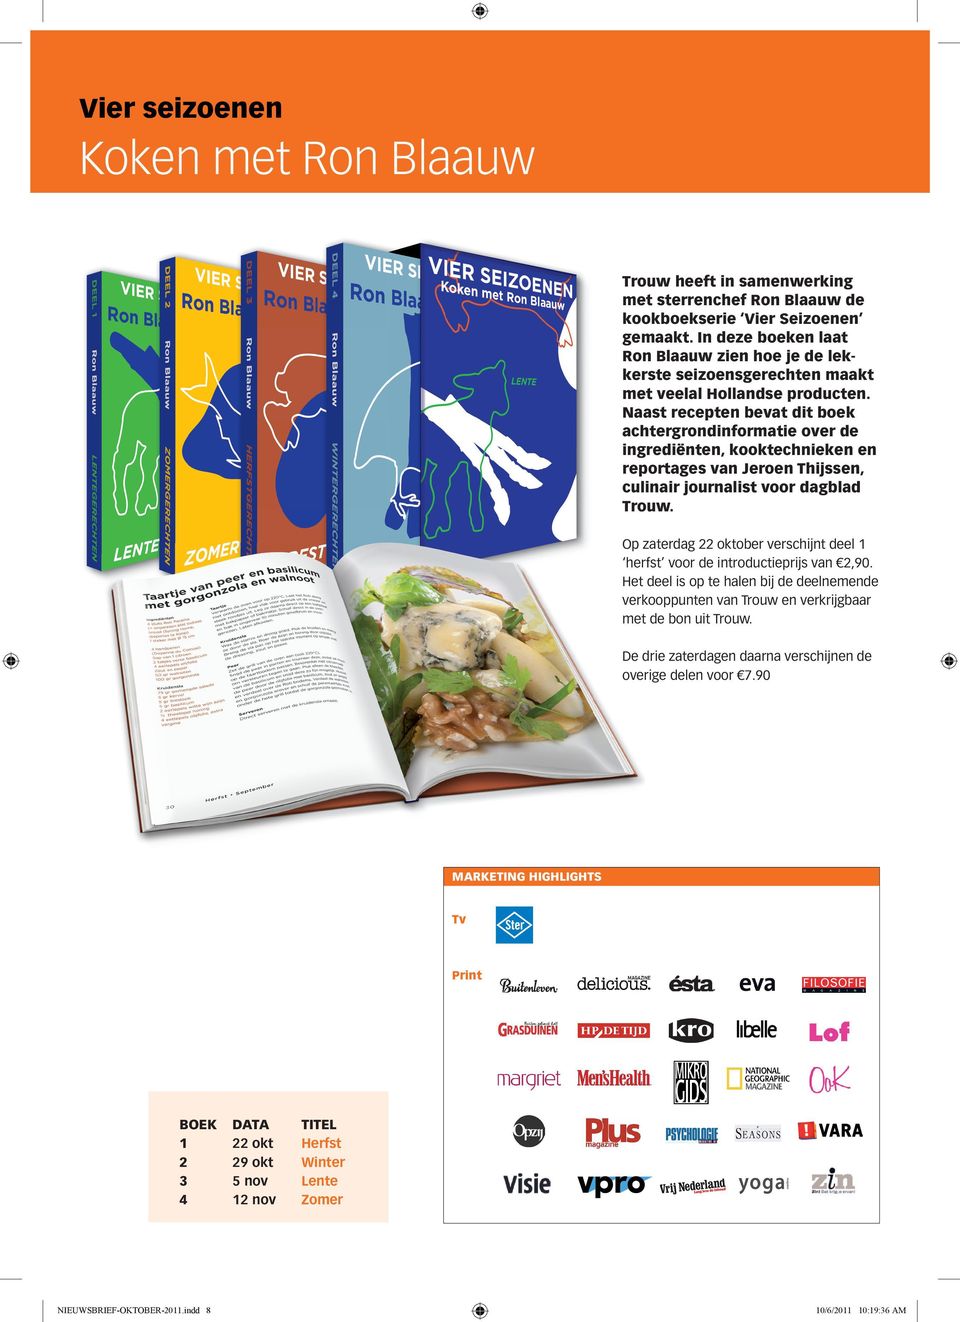 naast recepten bevat dit boek achtergrondinformatie over de ingrediënten, kooktechnieken en reportages van Jeroen thijssen, culinair journalist voor dagblad trouw.